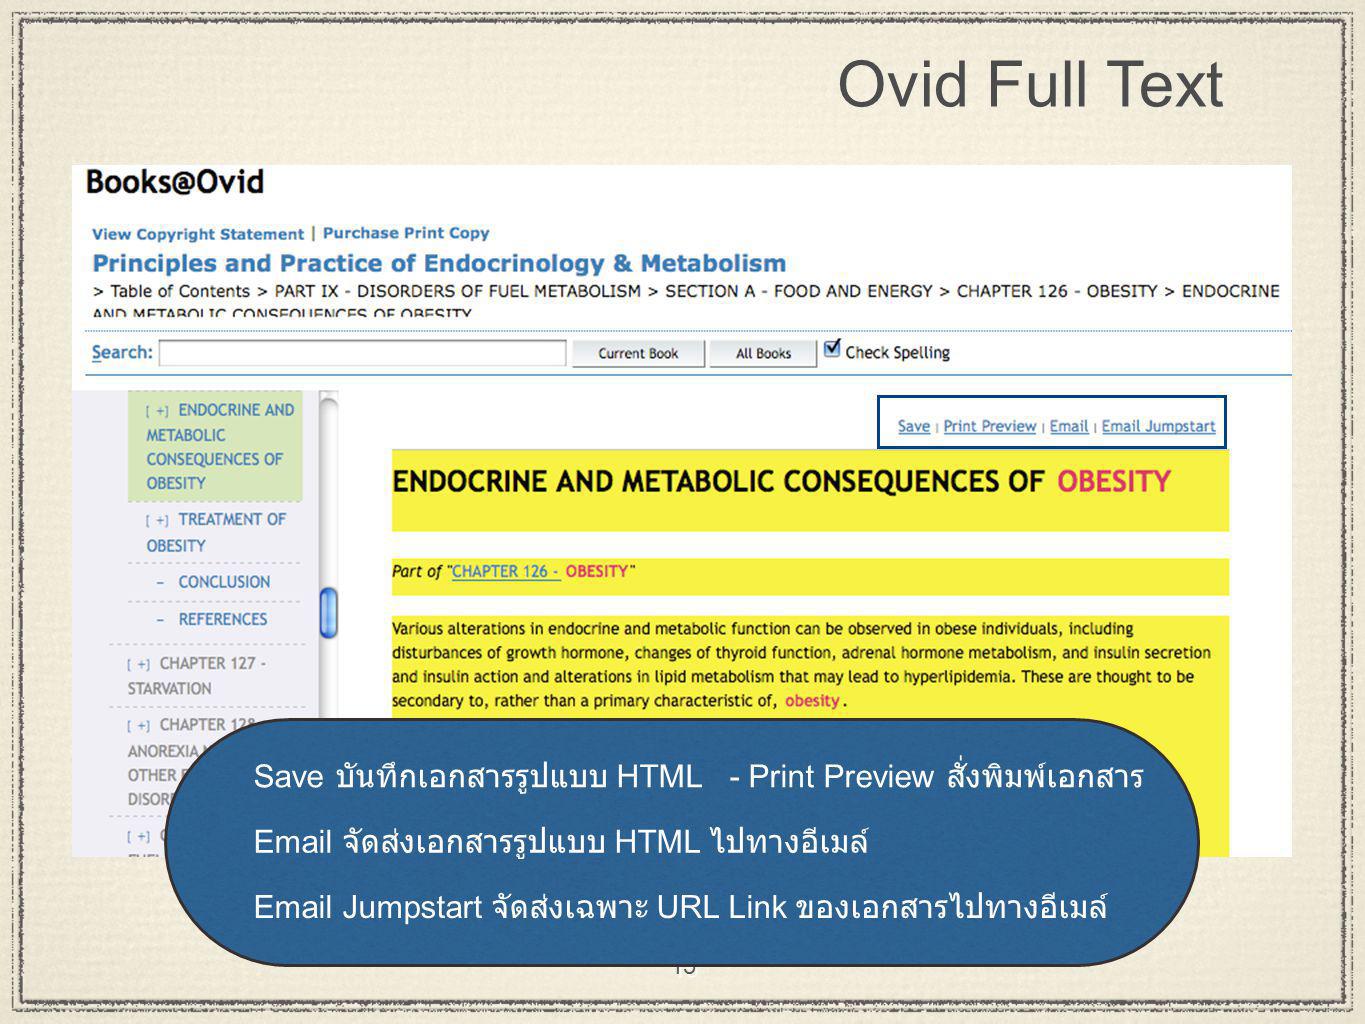 15 Ovid Full Text Save บันทึกเอกสารรูปแบบ HTML - Print Preview สั่งพิมพ์เอกสาร  Jumpstart จัดส่งเฉพาะ URL Link ของเอกสารไปทางอีเมล์  จัดส่งเอกสารรูปแบบ HTML ไปทางอีเมล์